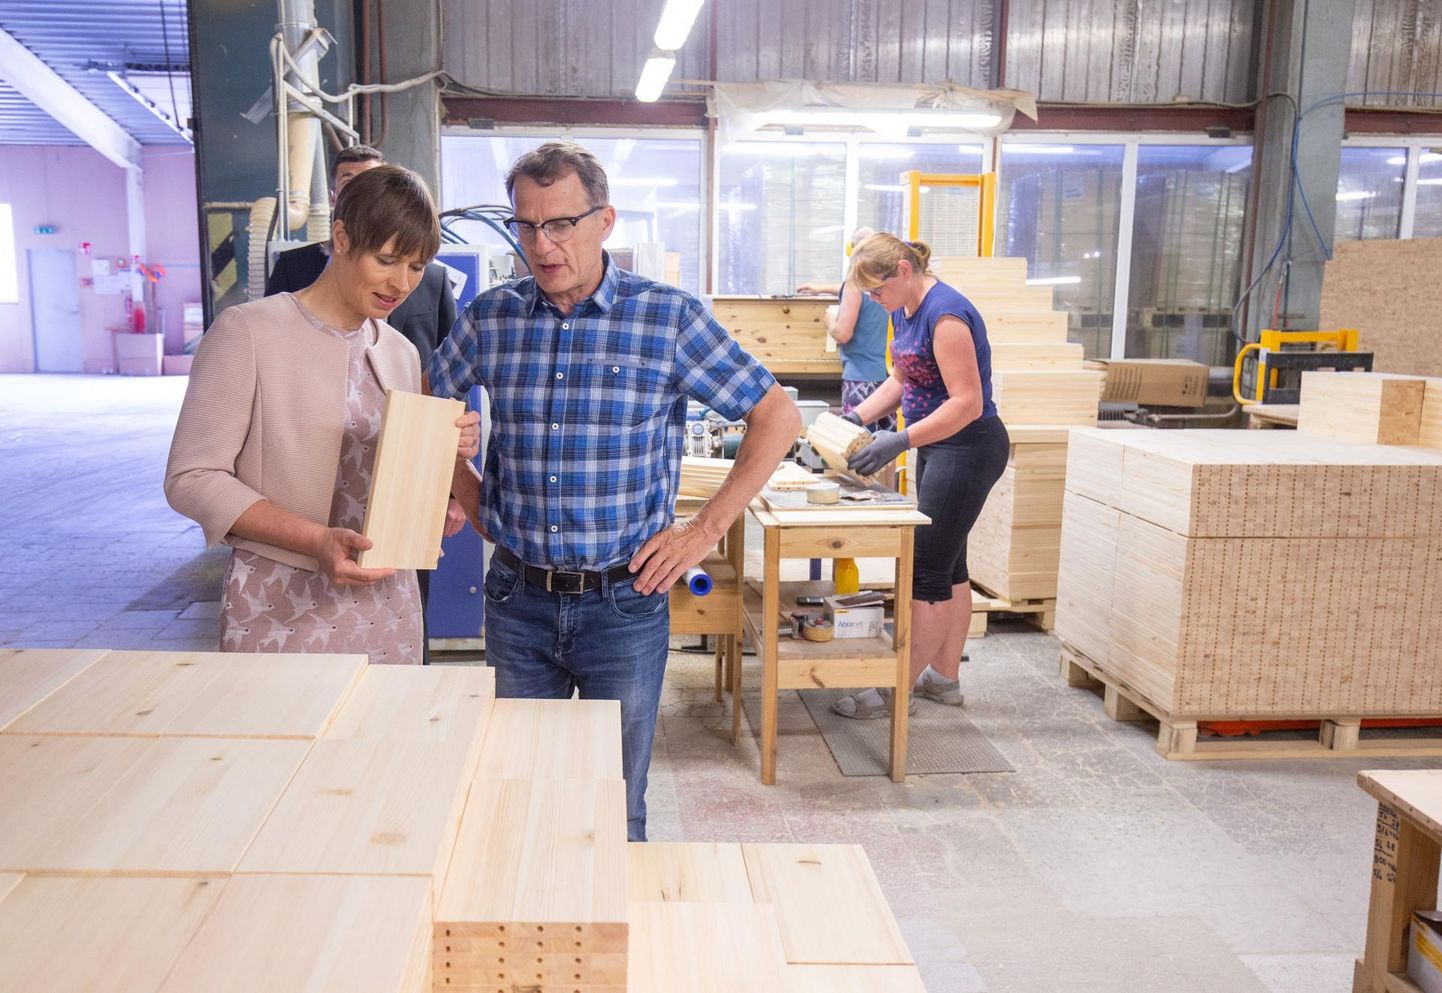 Umbes 130 inimesele tööd pakkuvas Textuuri tehases käis eelmisel suvel külas president Kersti Kaljulaid. Pildil on ta koos ettevõtte juhi Argo Jõgiga.